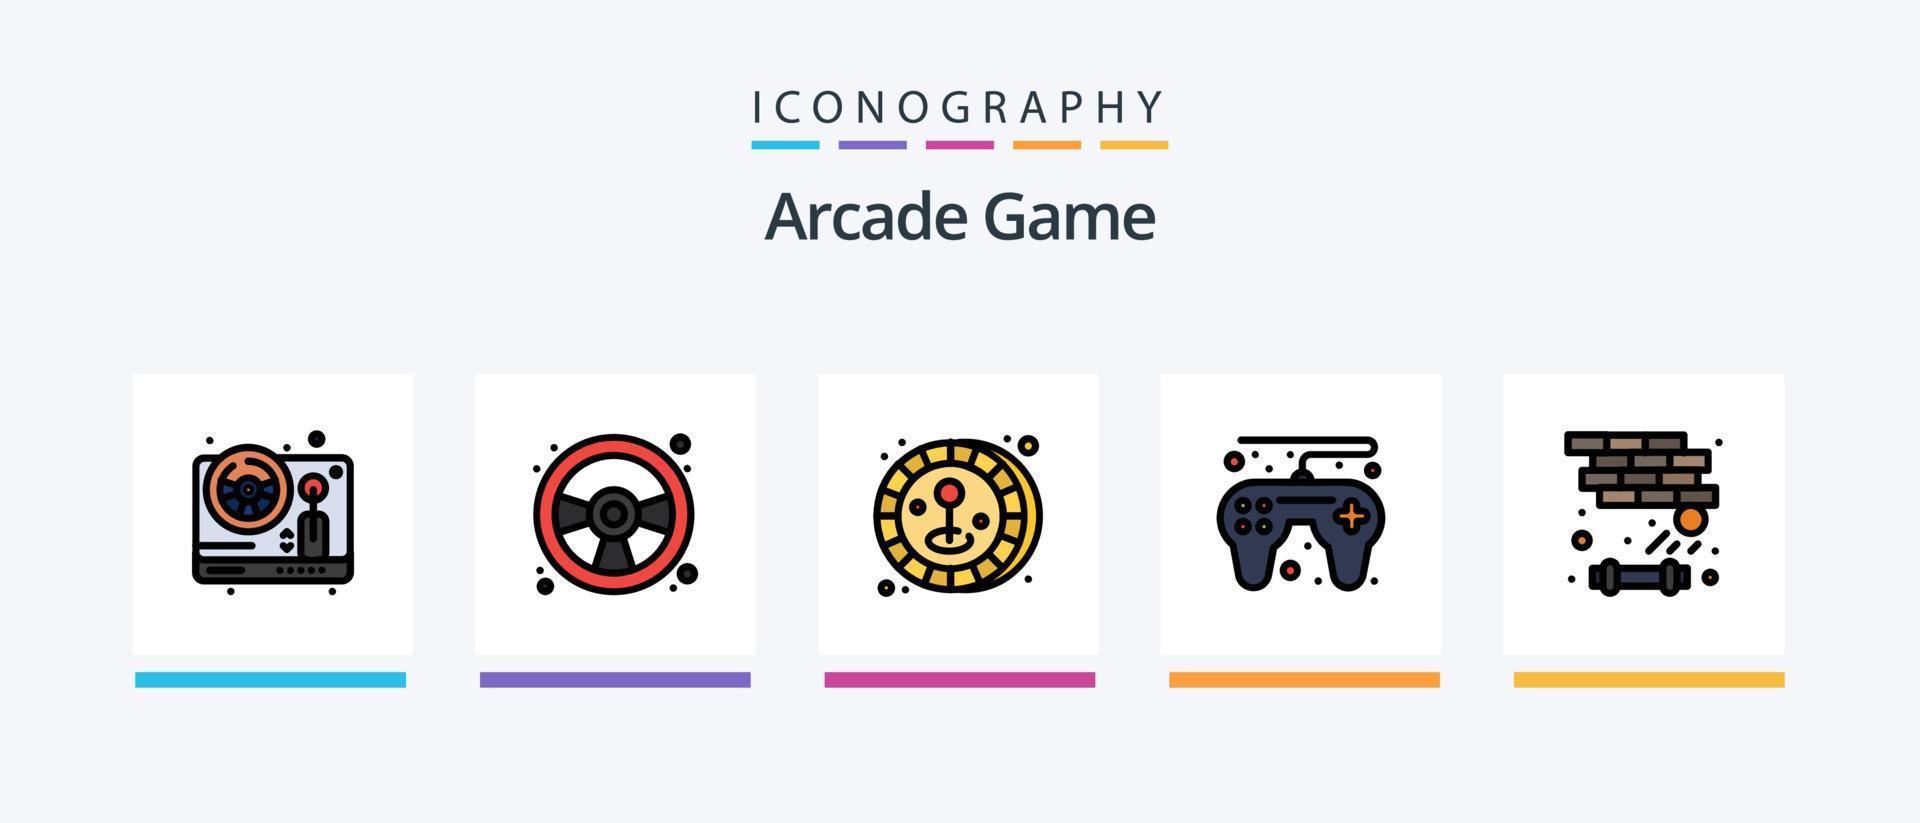 ligne d'arcade remplie de 5 packs d'icônes comprenant un score élevé. jouer. voiture de course. enfants. amusant. conception d'icônes créatives vecteur